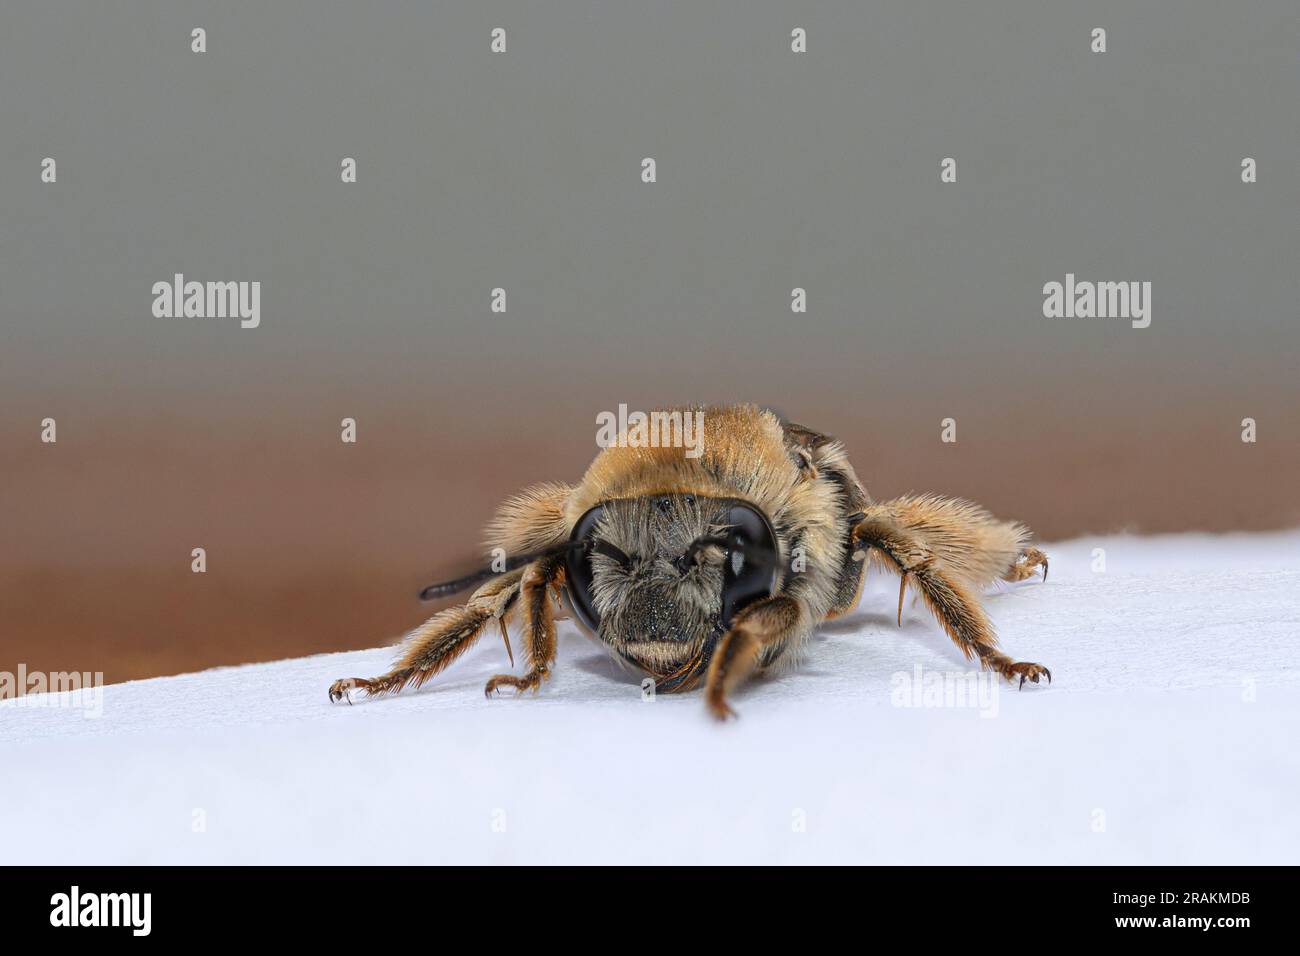 Vue de face abeille suçant le miel d'une surface Banque D'Images